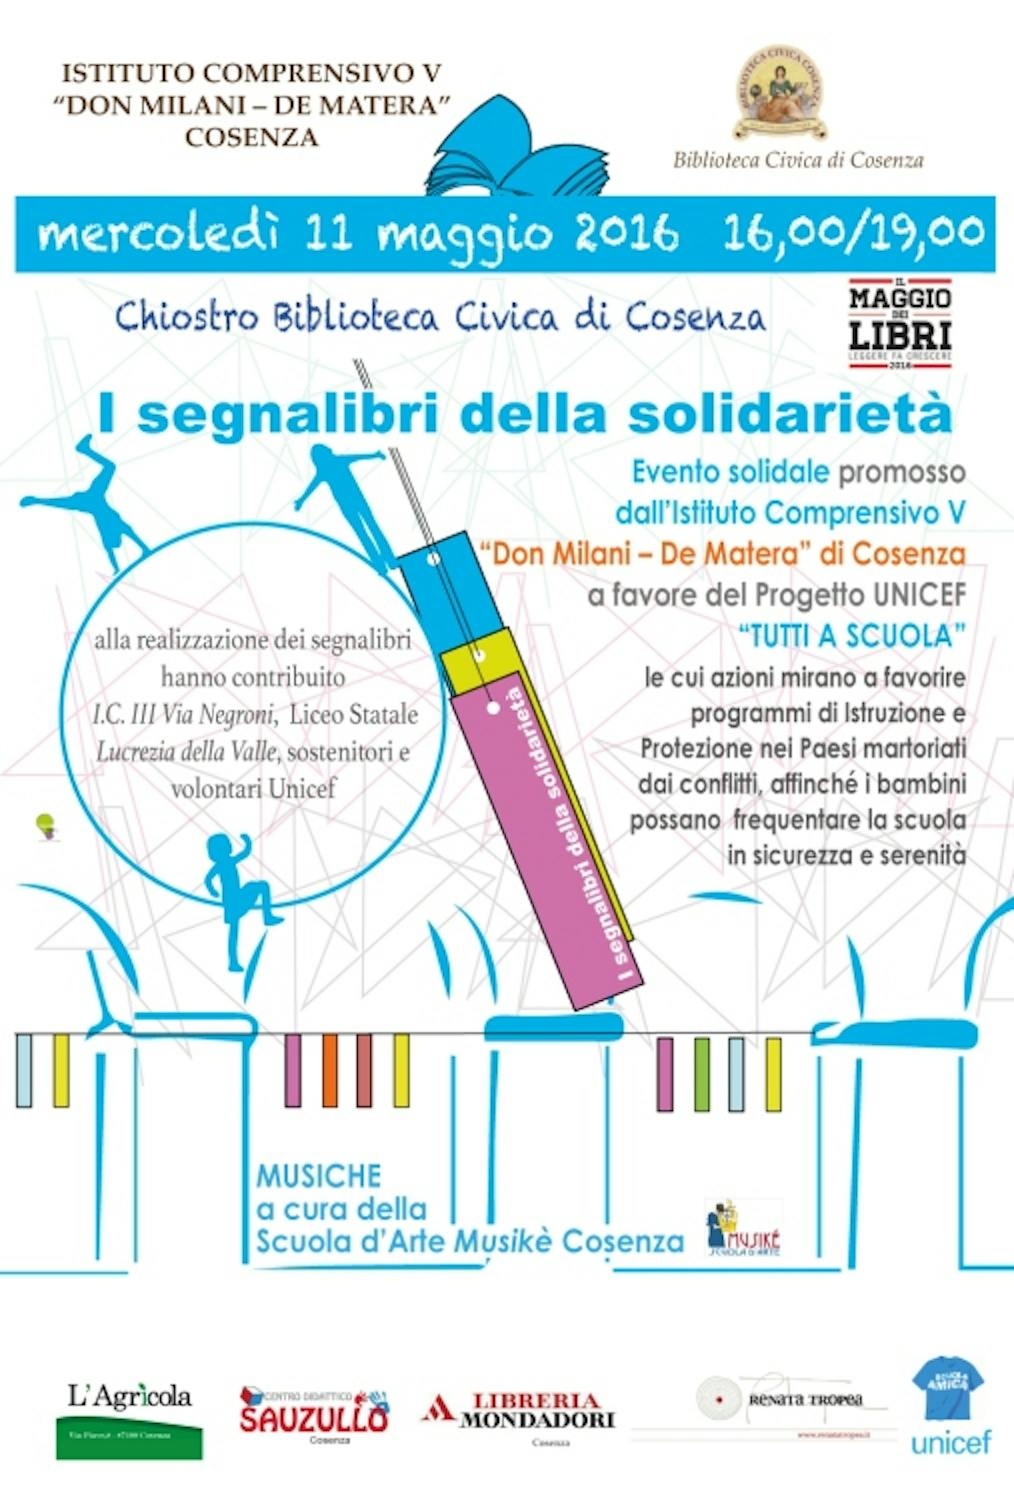 11 maggio 2016 - I Segnalibri della Solidarietà a favore del progetto UNICEF Tutti a Scuola